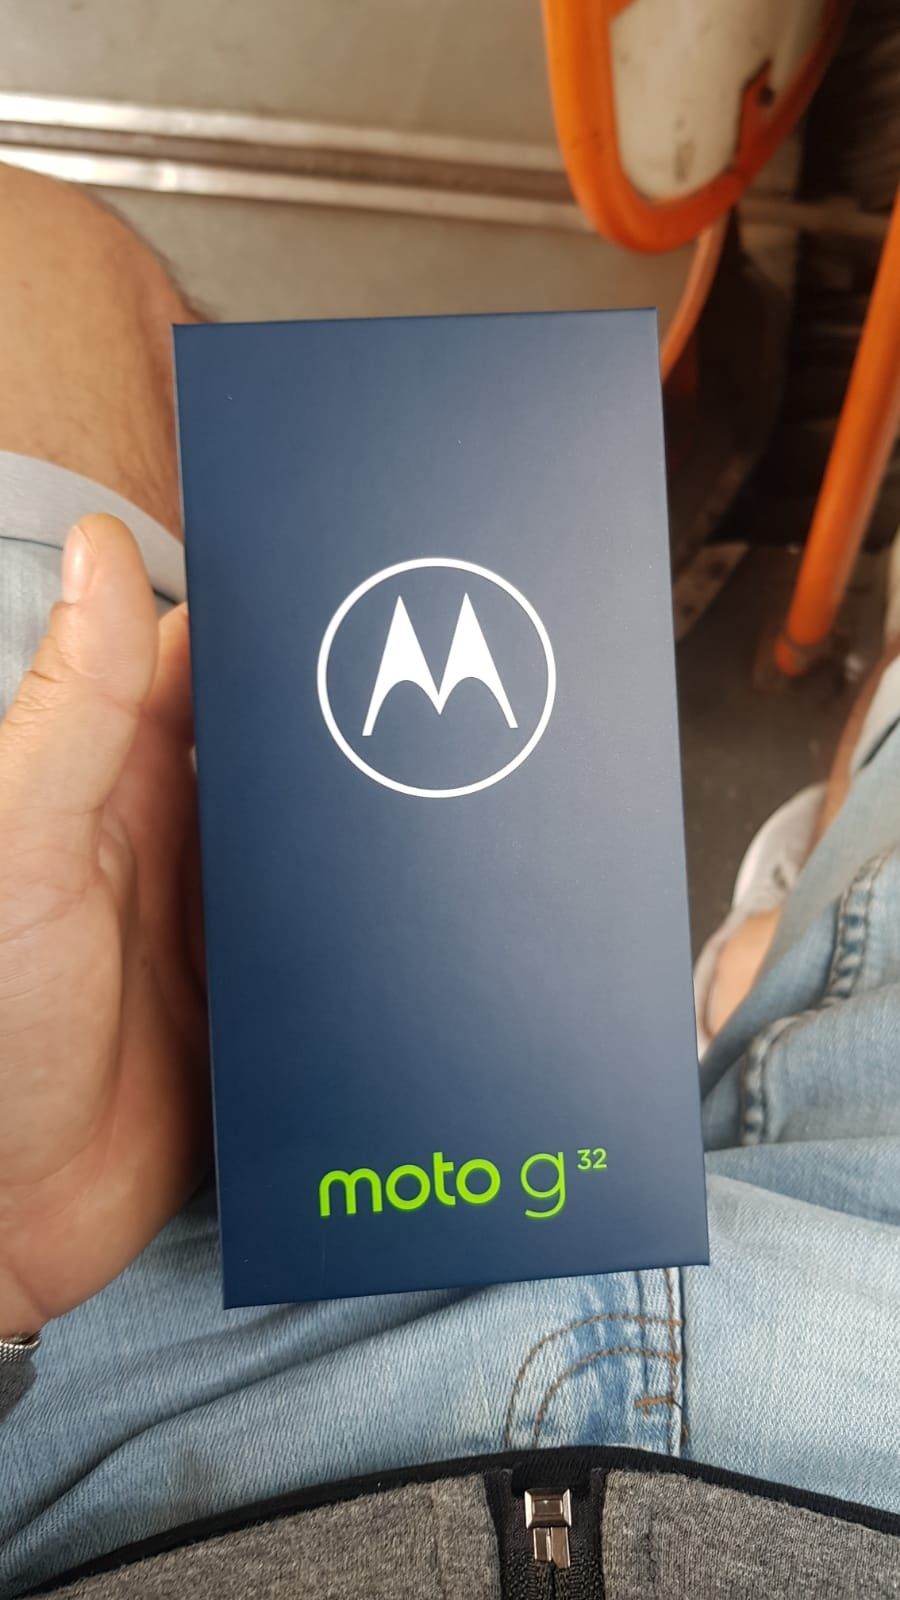 Motorola g32 la cutie însoțit de toate accesoriile